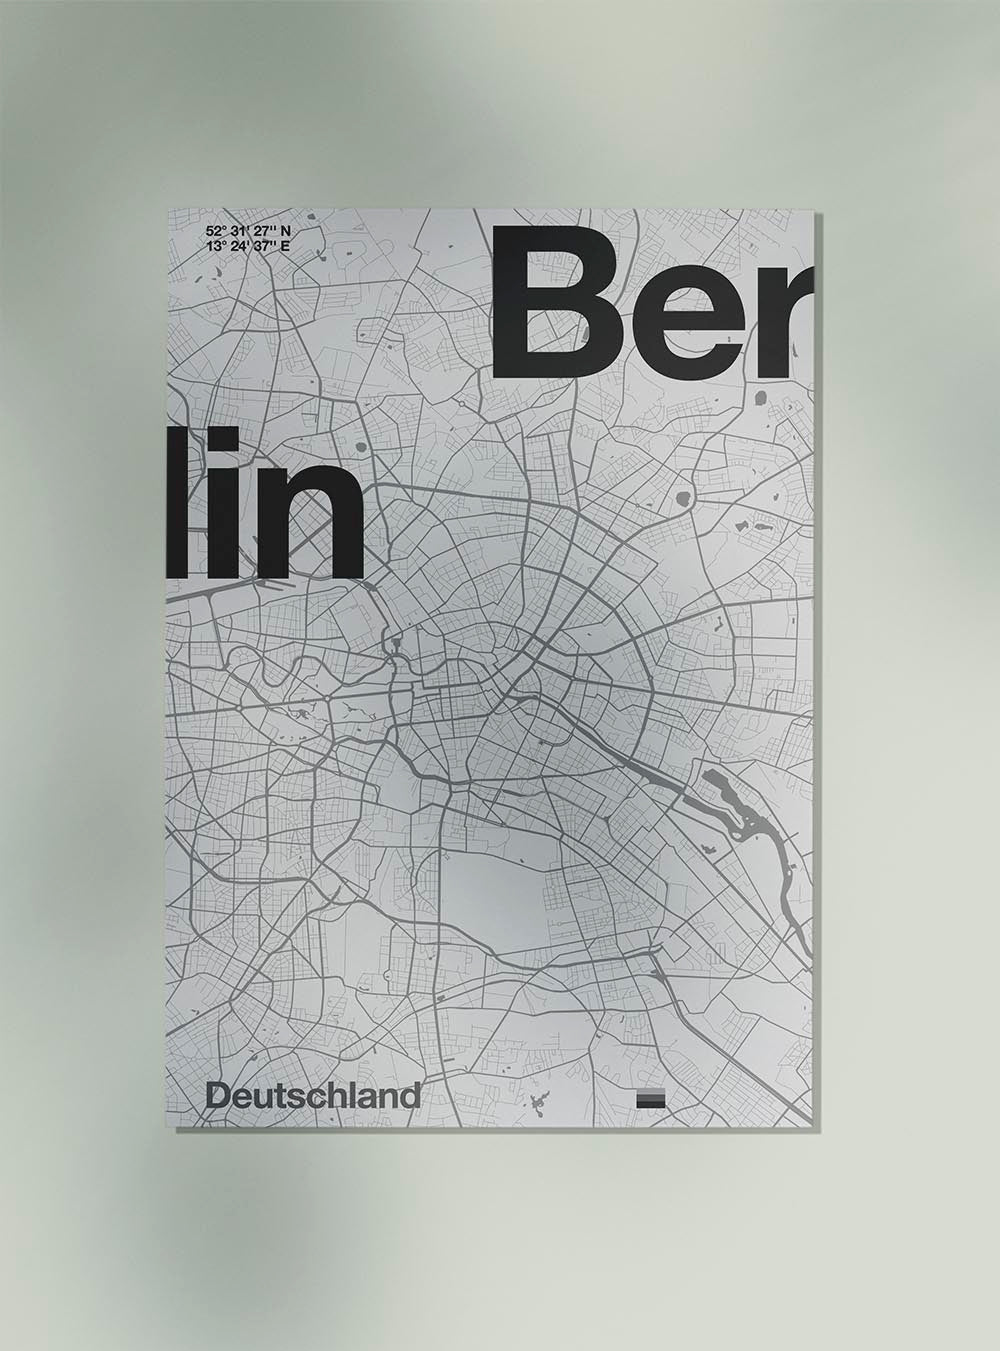 Berlin Map by Florent Bodart